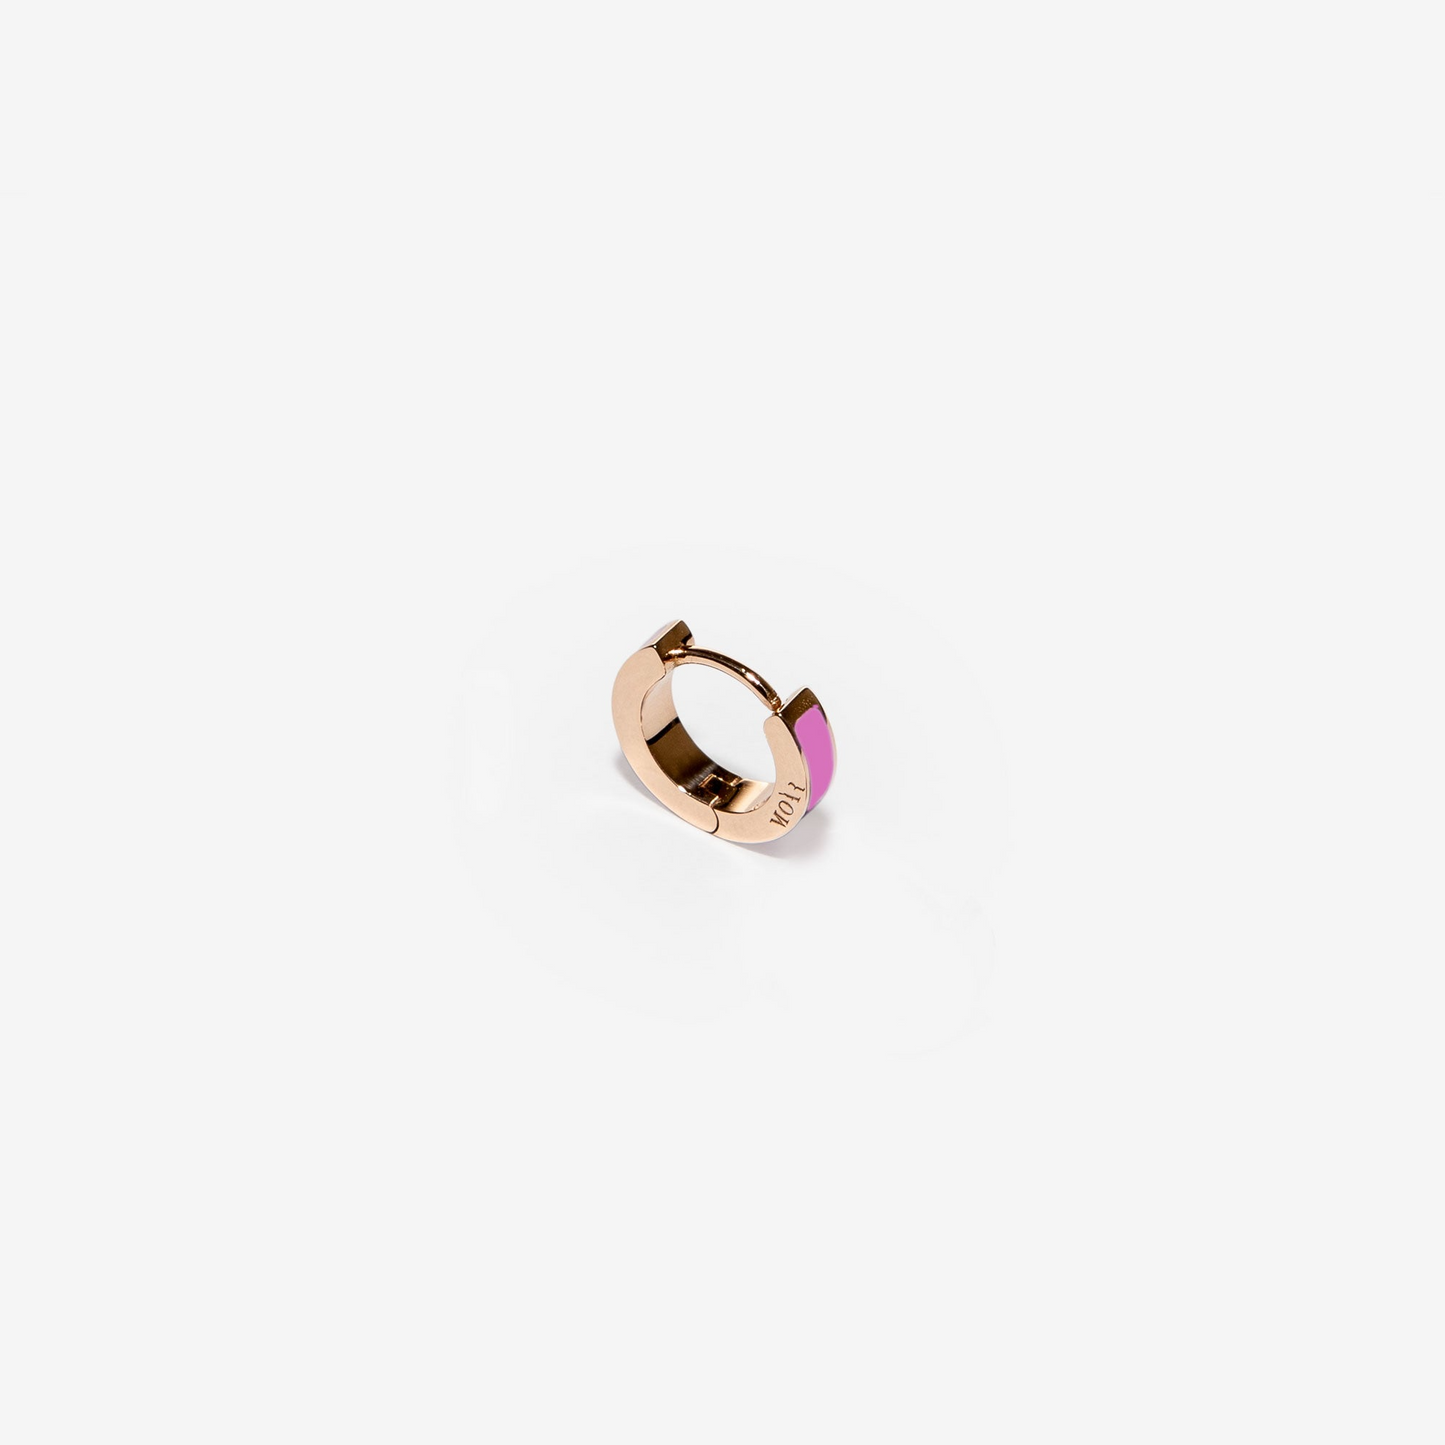 Insdie light pink single earring